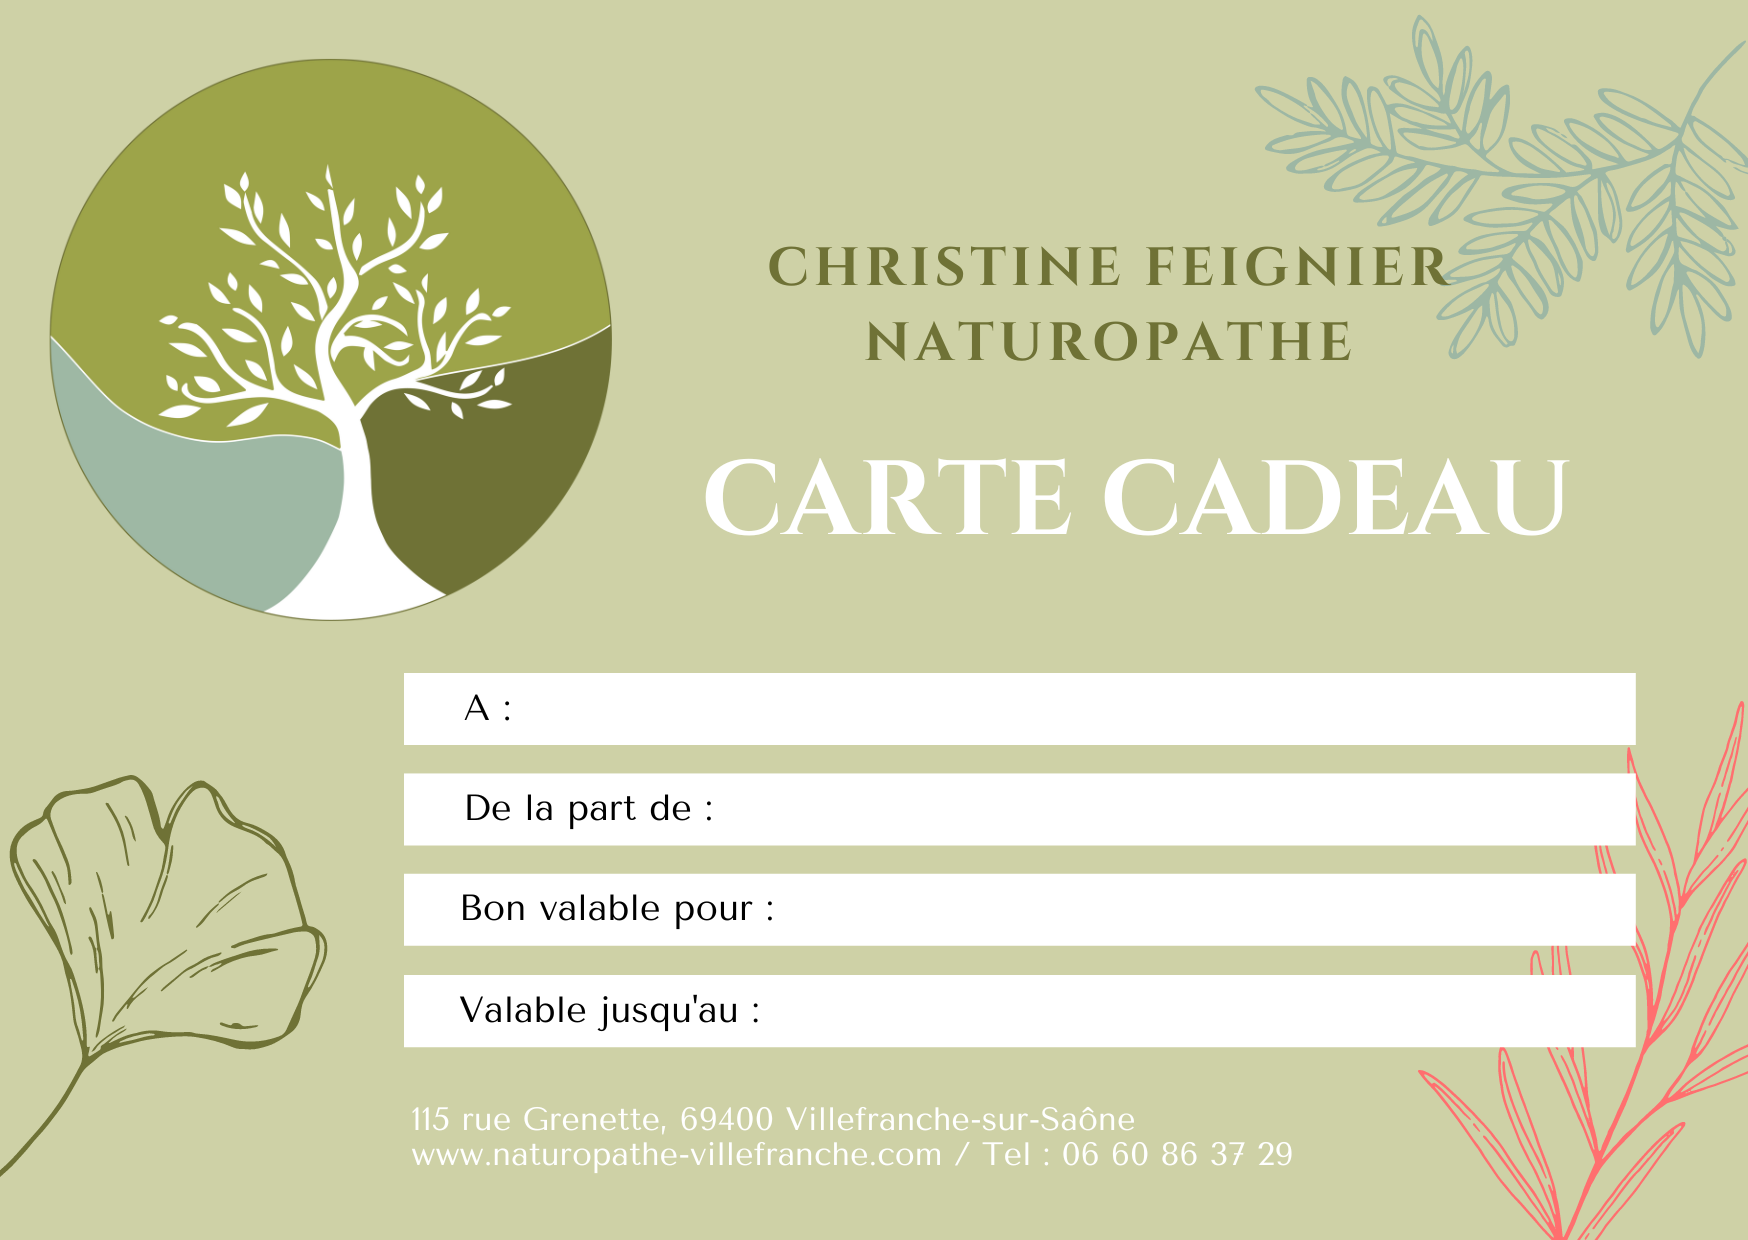 Cartes cadeau de Christine Feignier, naturopathe